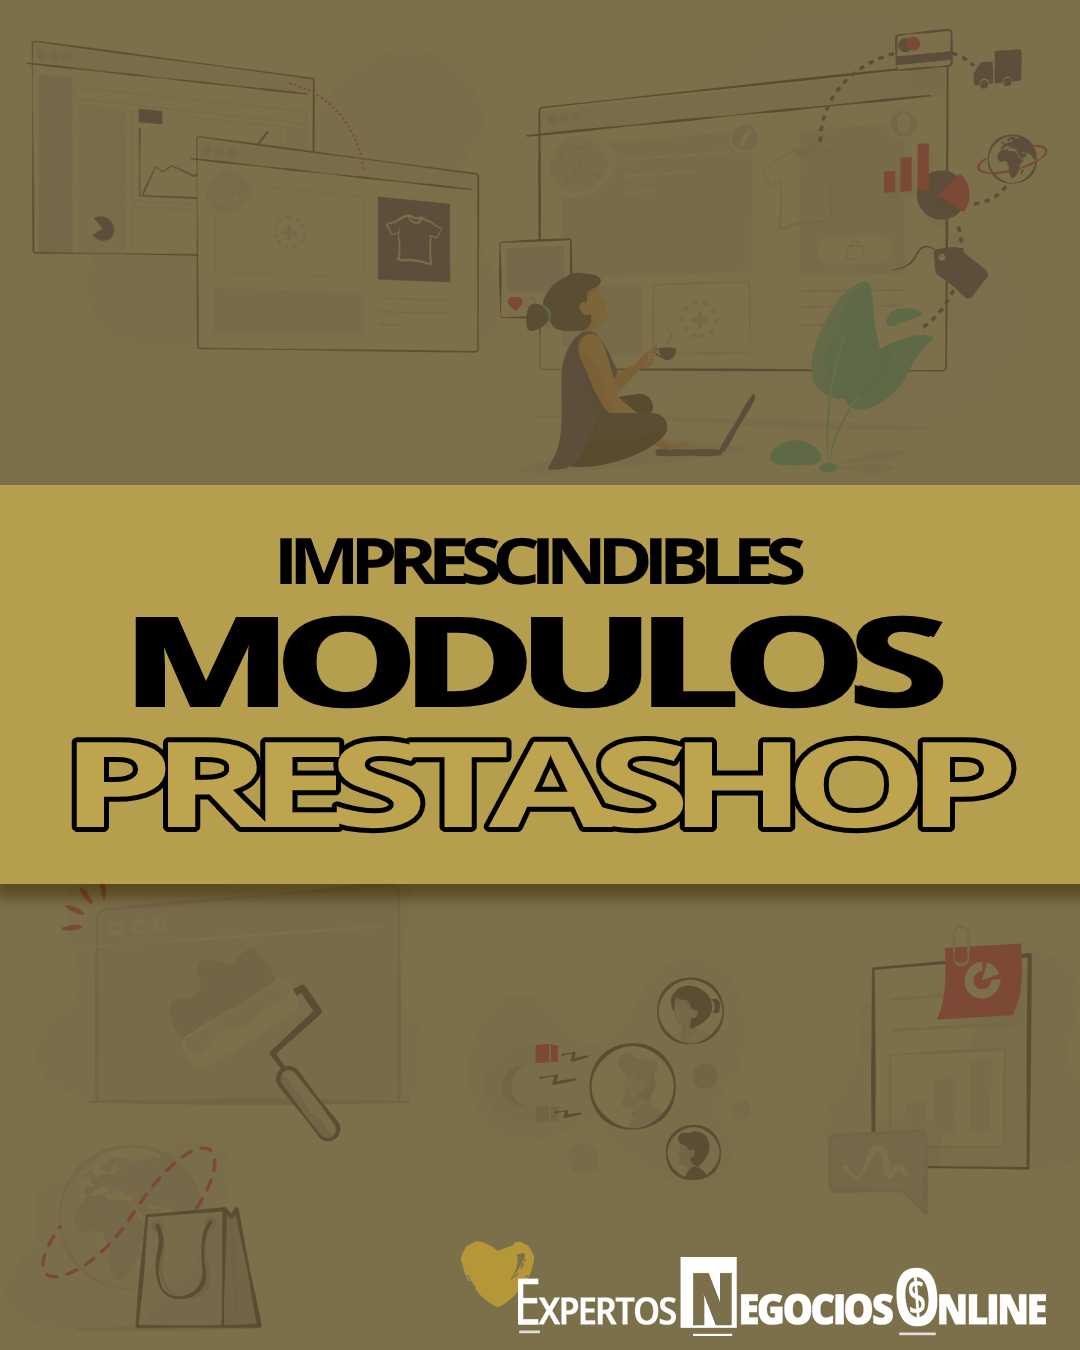 modulos prestashop 1.7 imprescindibles